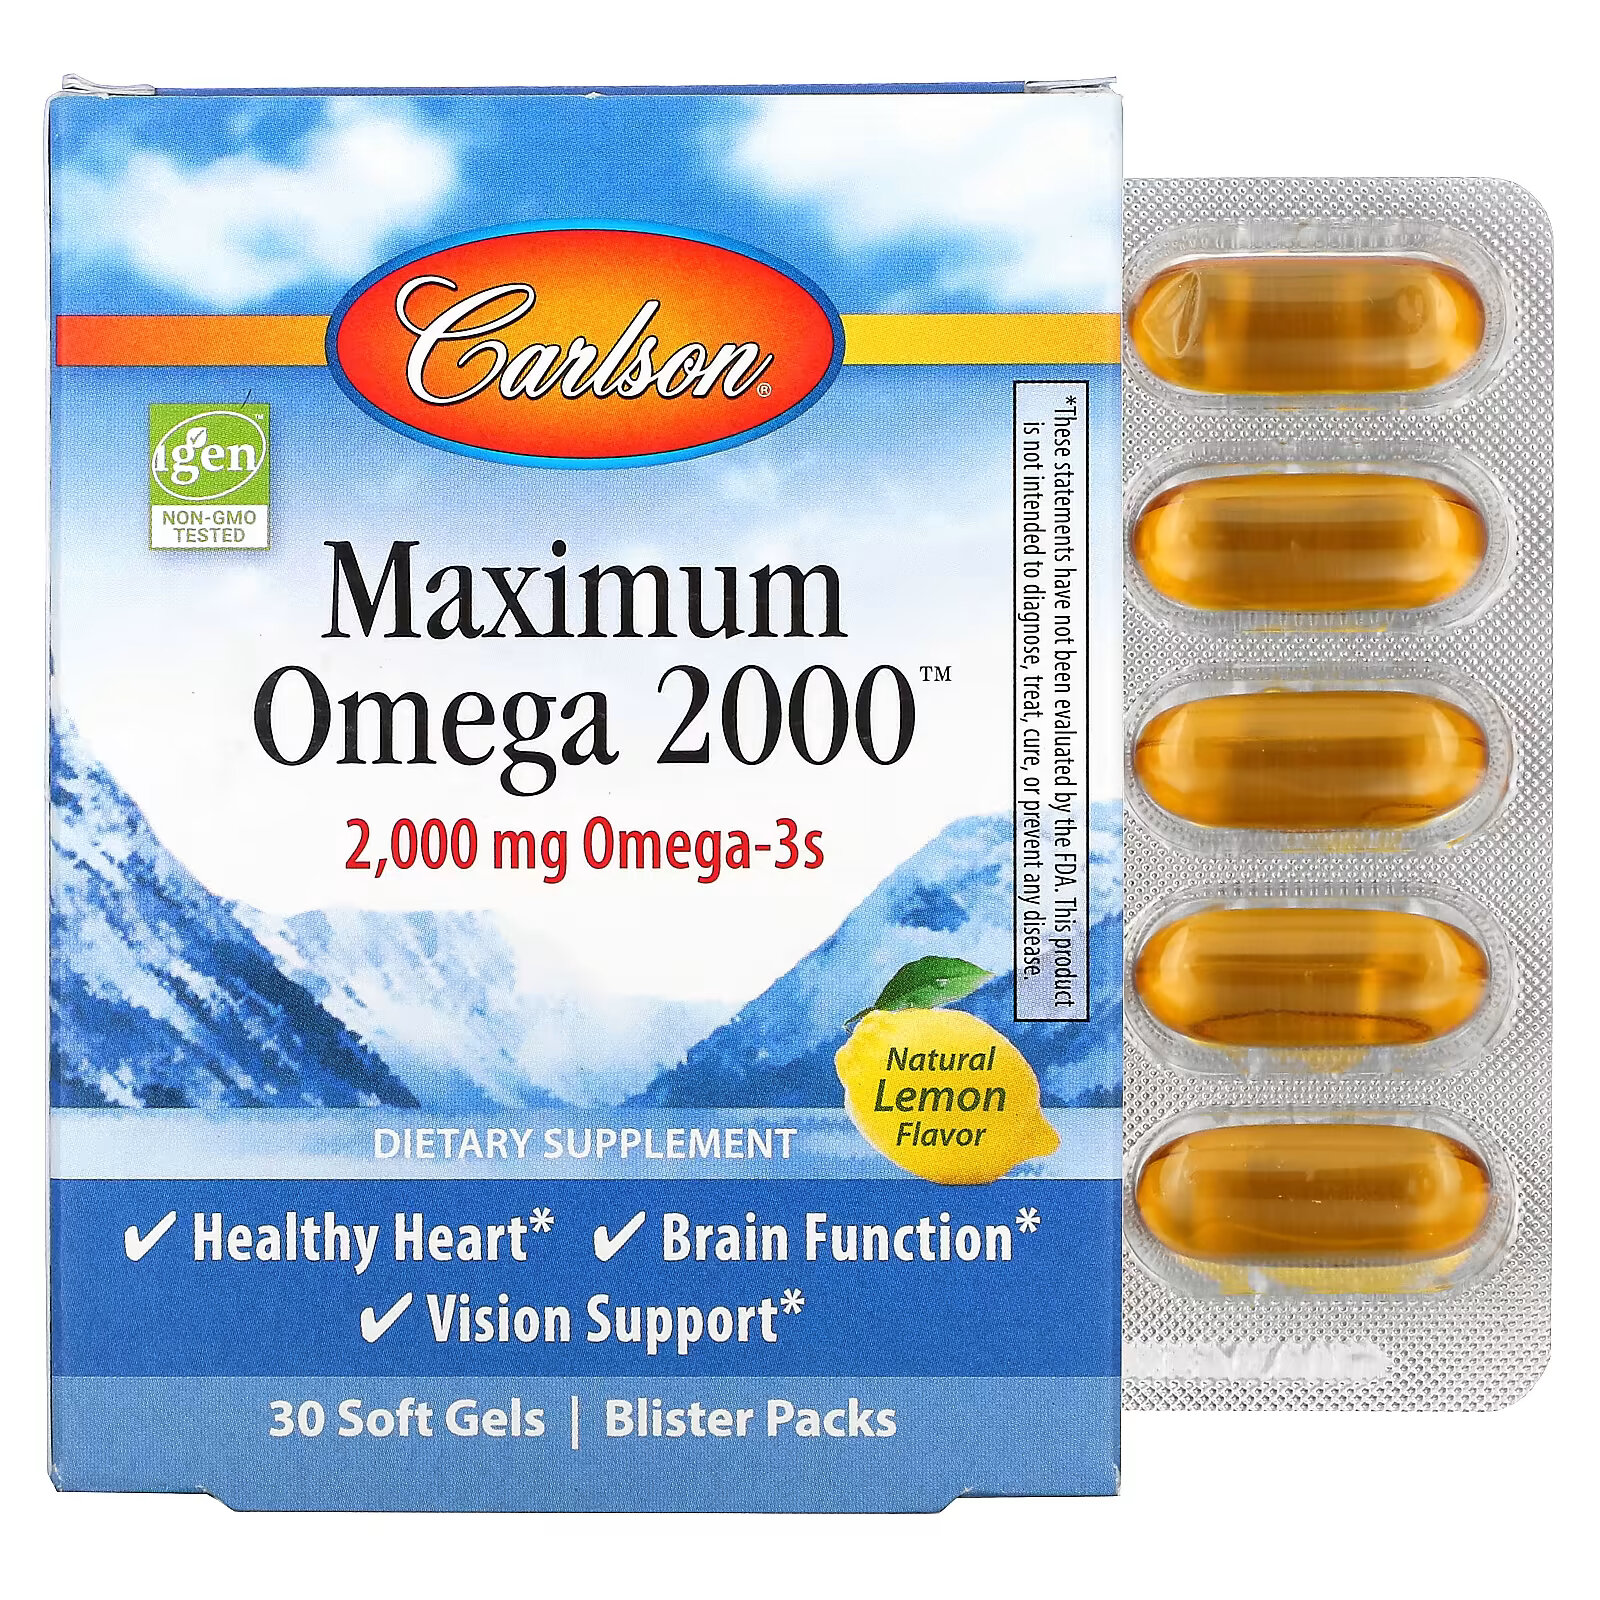 Carlson, Maximum Omega 2000, натуральный лимонный вкус, 1000 мг, 30 мягких таблеток carlson maximum omega 2000 натуральный лимонный вкус 1000 мг 30 мягких таблеток